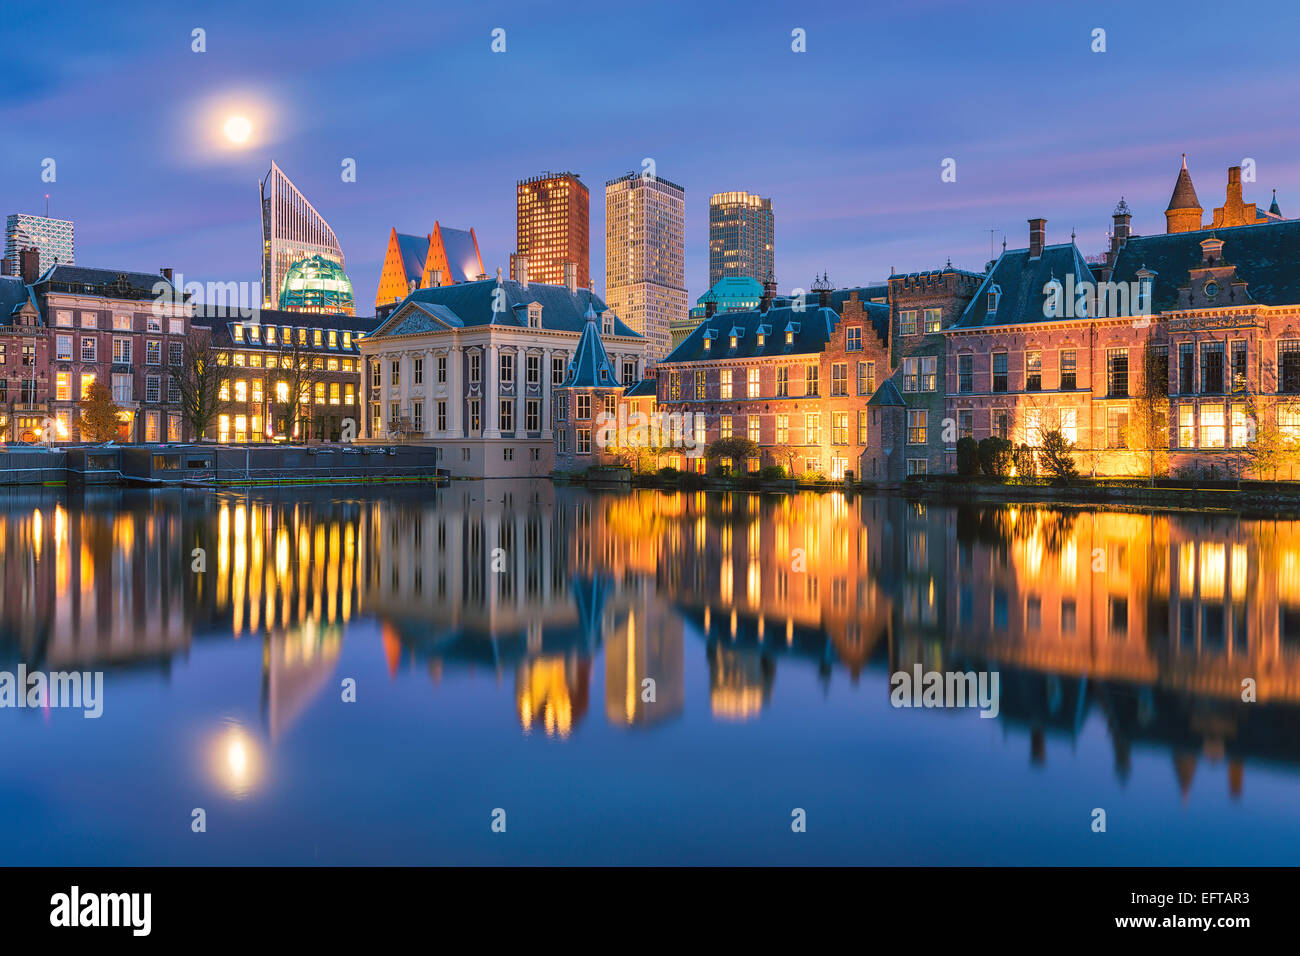 Ein Stadtbild von den Haag in den Niederlanden mit der berühmten Mauritshuis, den Hofvijver und das niederländische Parlament Stockfoto